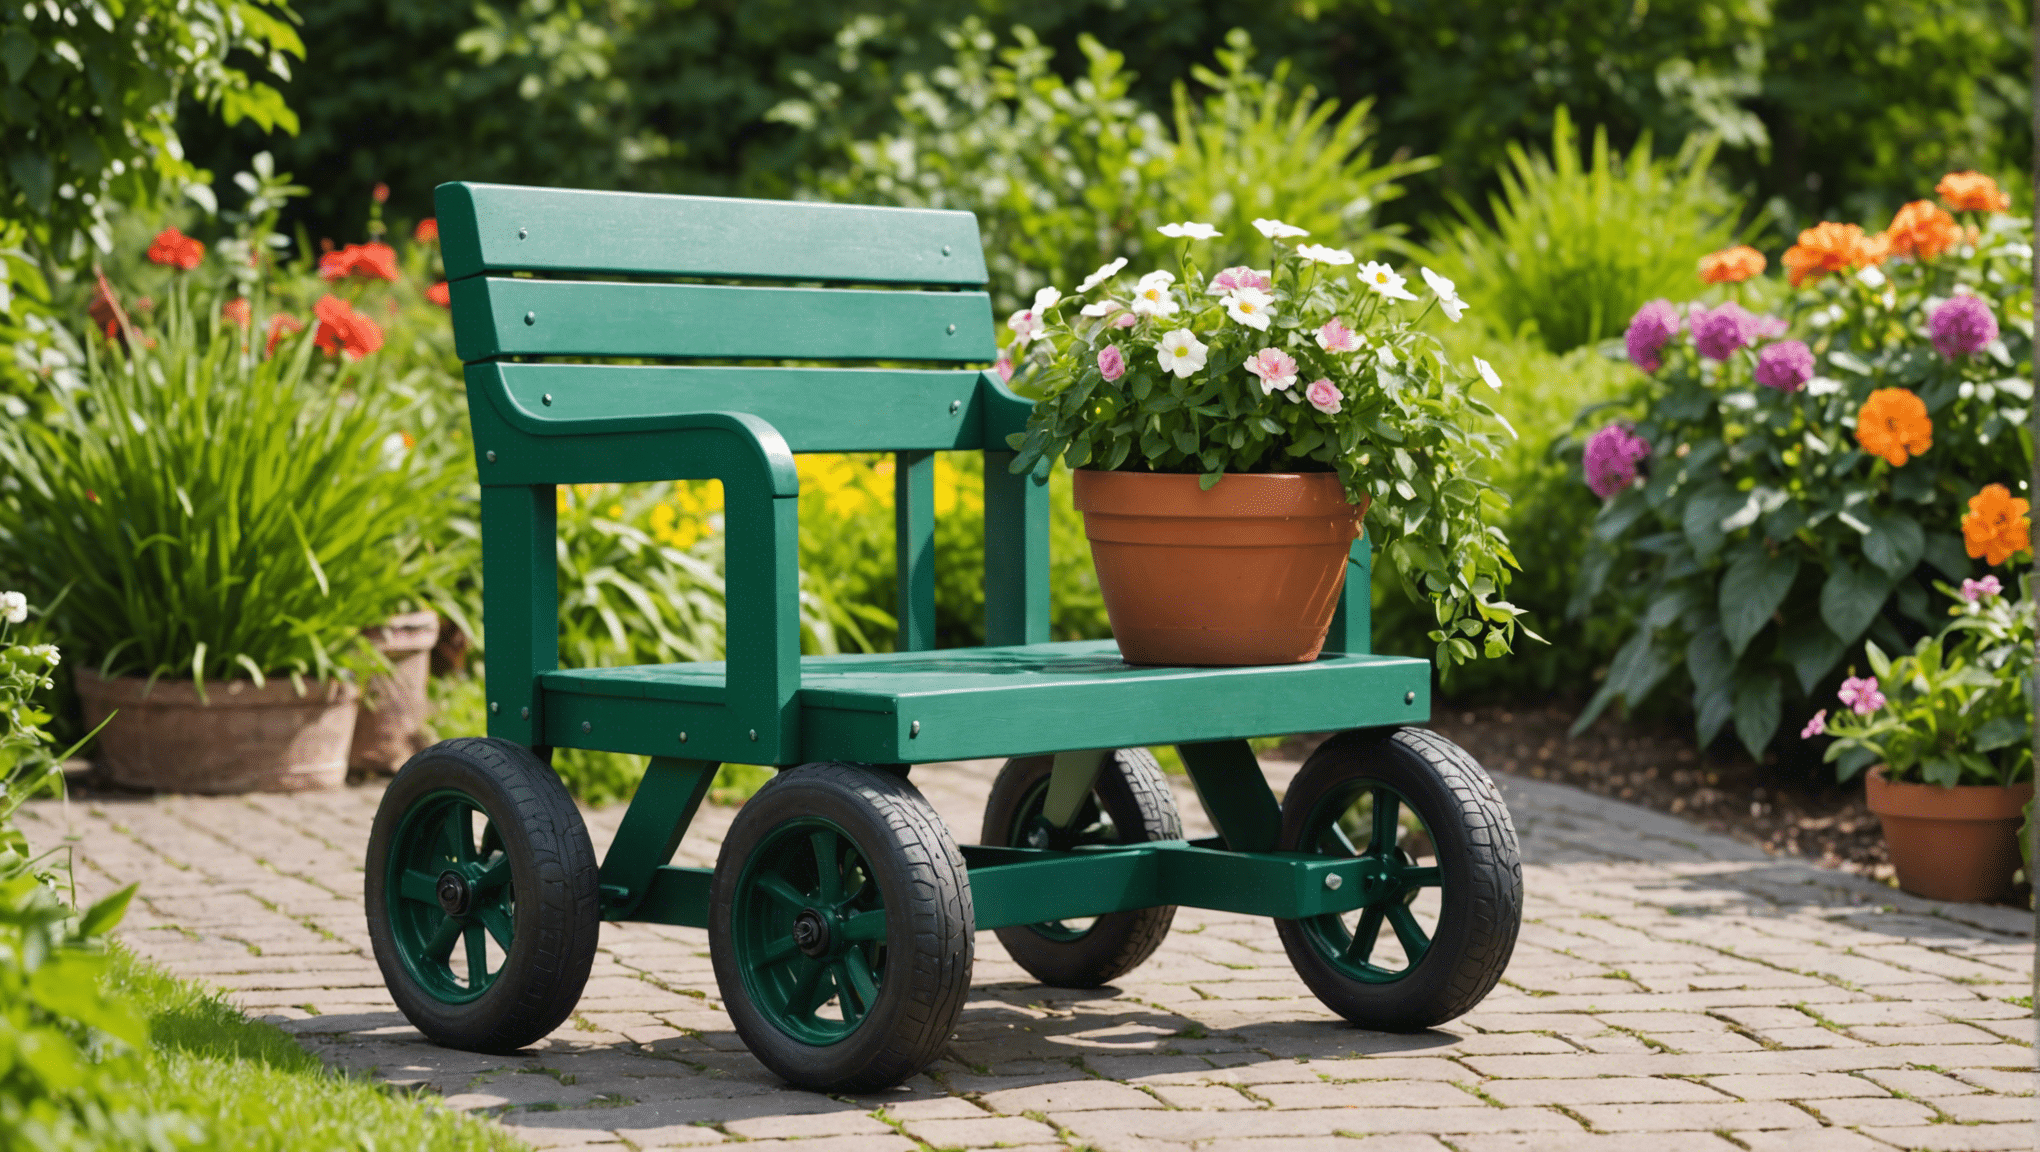 descubra os benefícios de investir em um assento de jardinagem com rodas e transforme sua experiência de jardinagem. descubra como esta ferramenta versátil pode aumentar o seu conforto e produtividade no jardim.